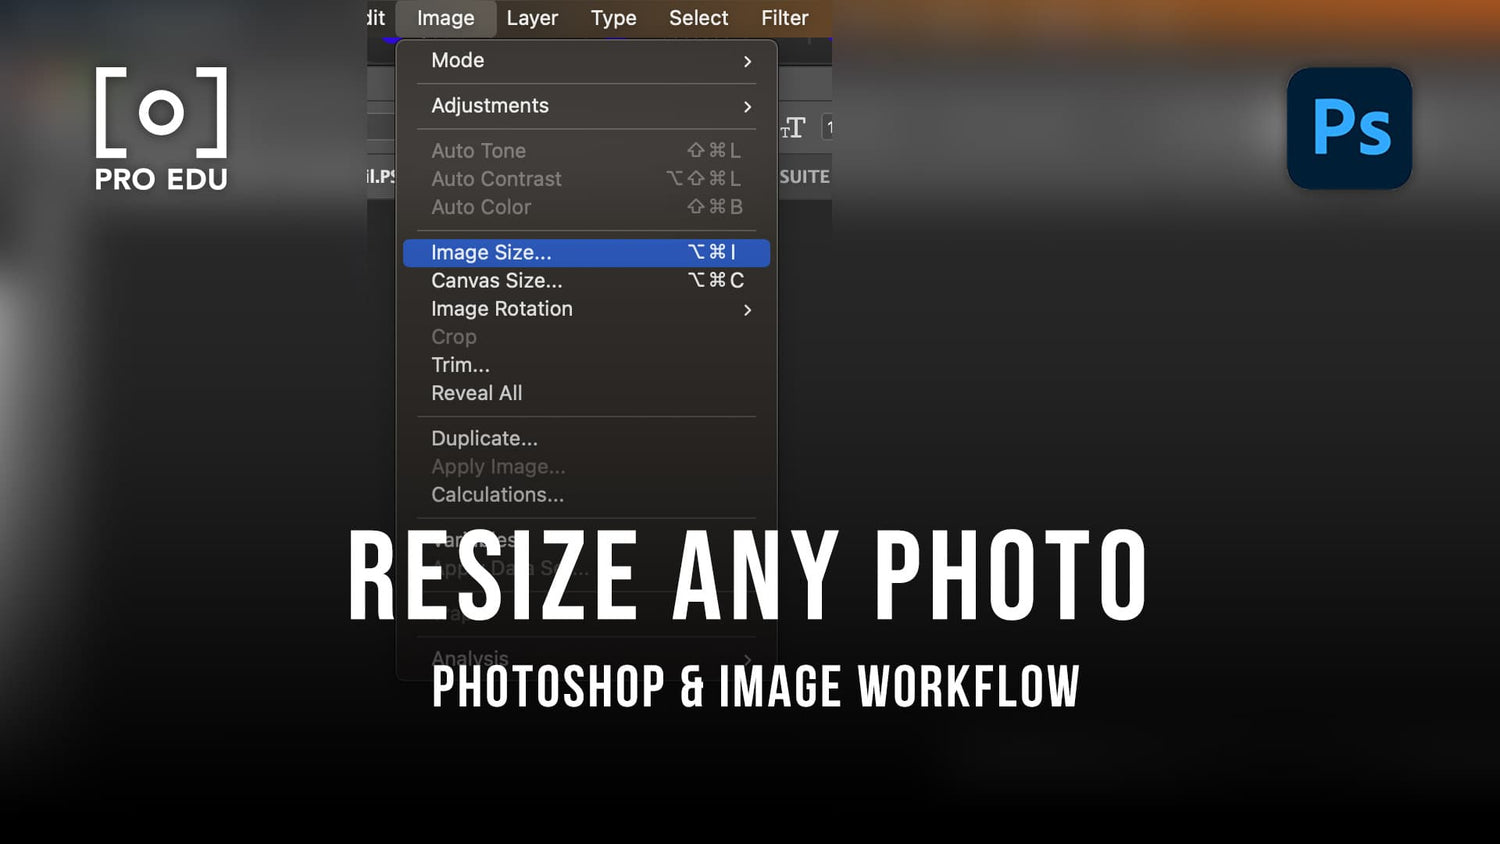 resize photo image in photoshop of the tool bar pro edu